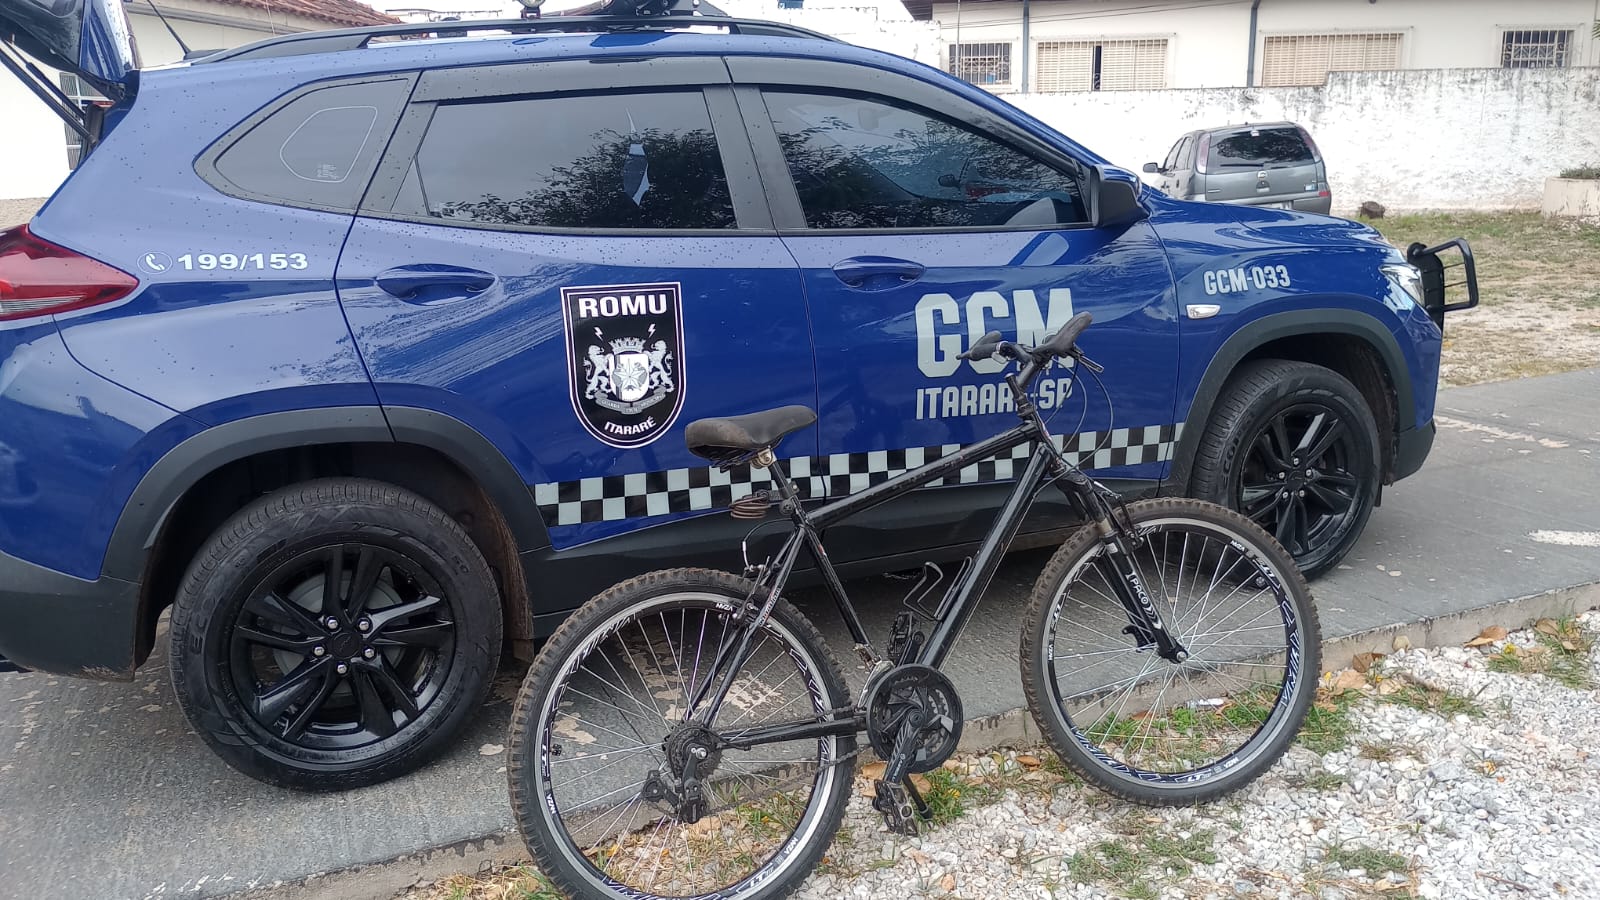 ROMU de Itararé (SP) localiza bicicleta furtada instantes após o furto